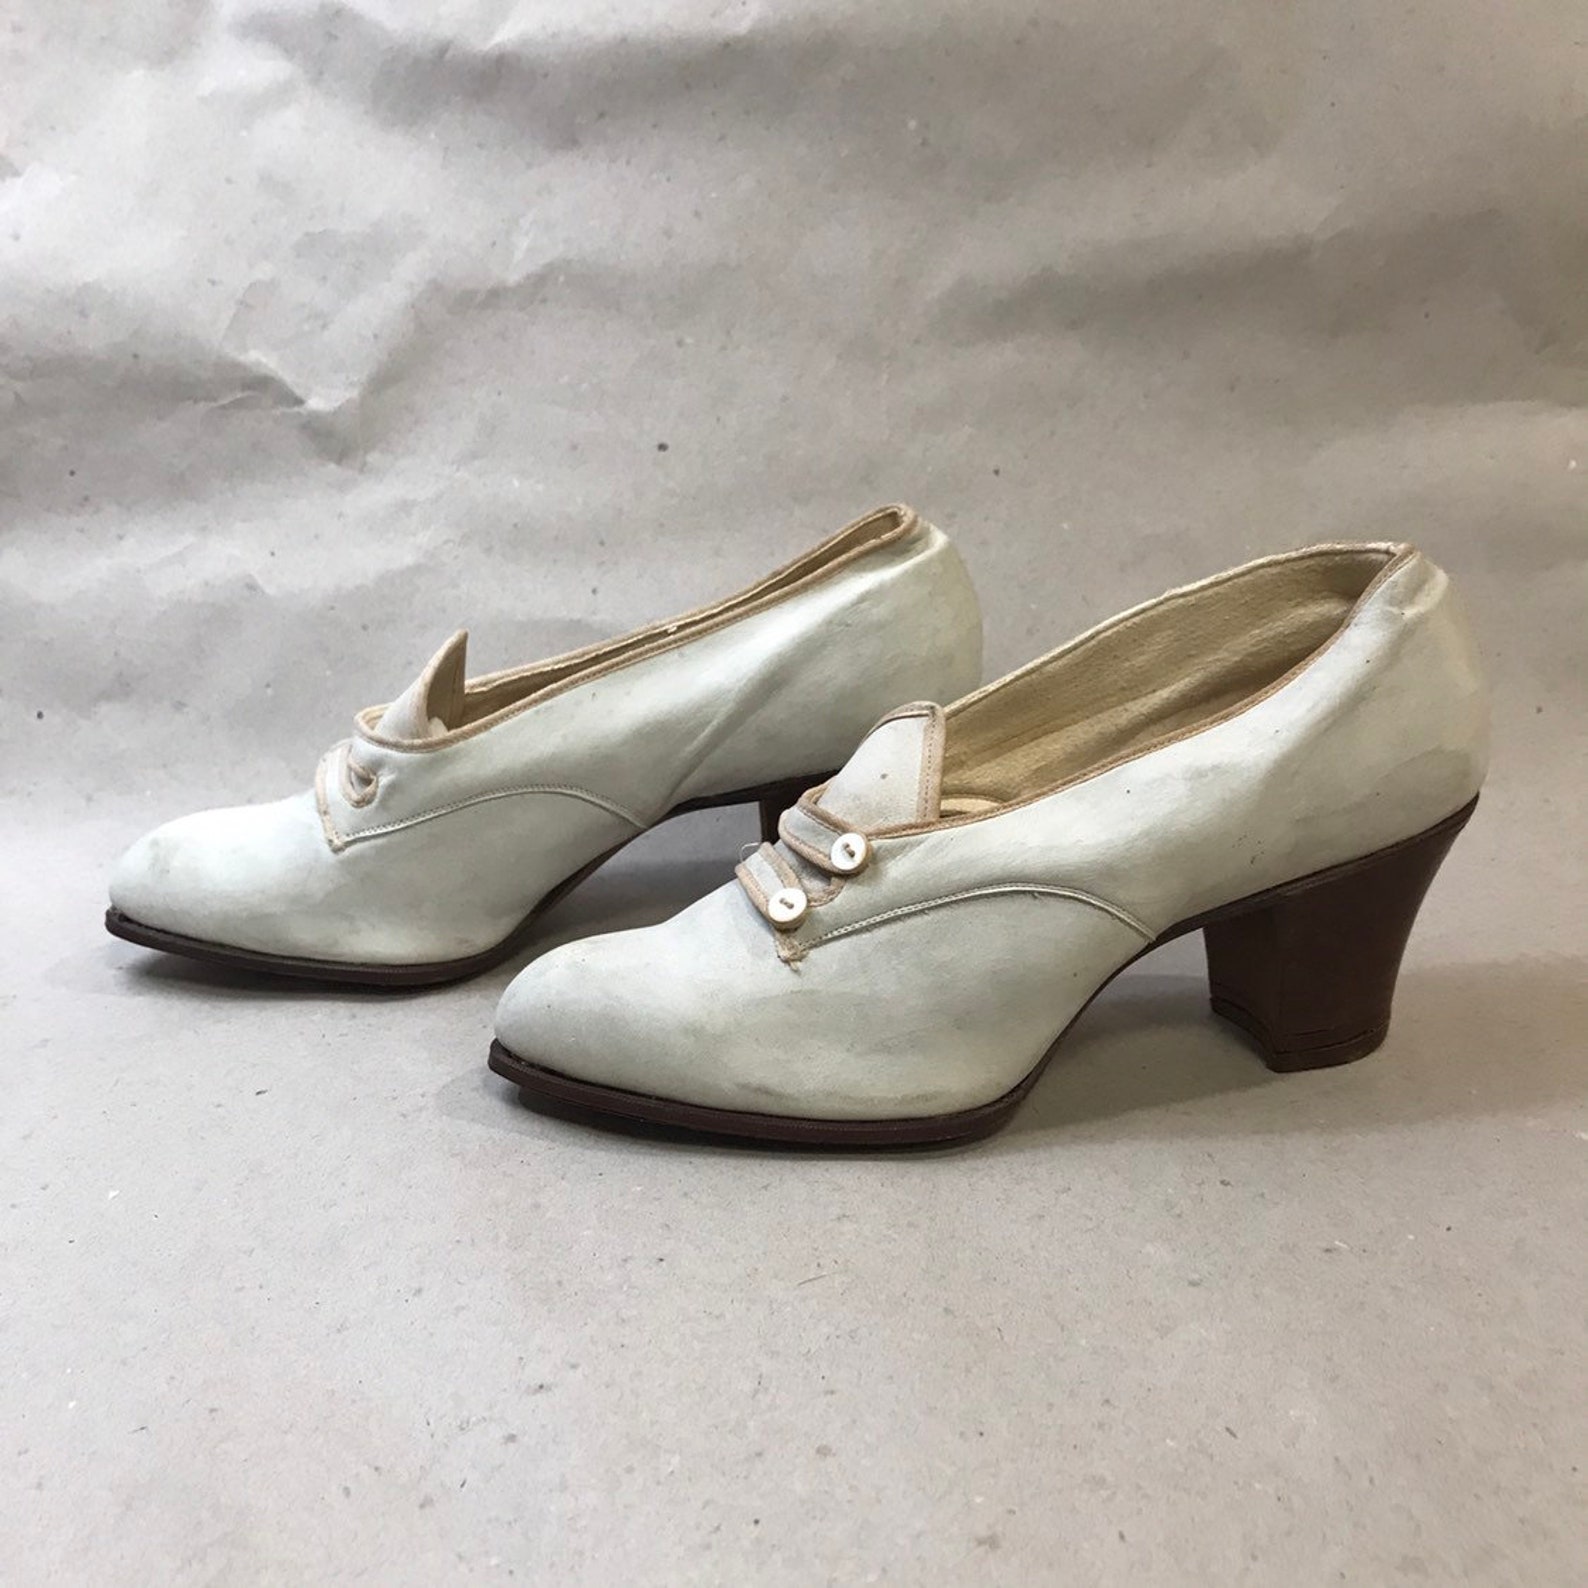 Edwardian Shoes 1910s Heels White // Size 4 1/2 5 NOS - Etsy